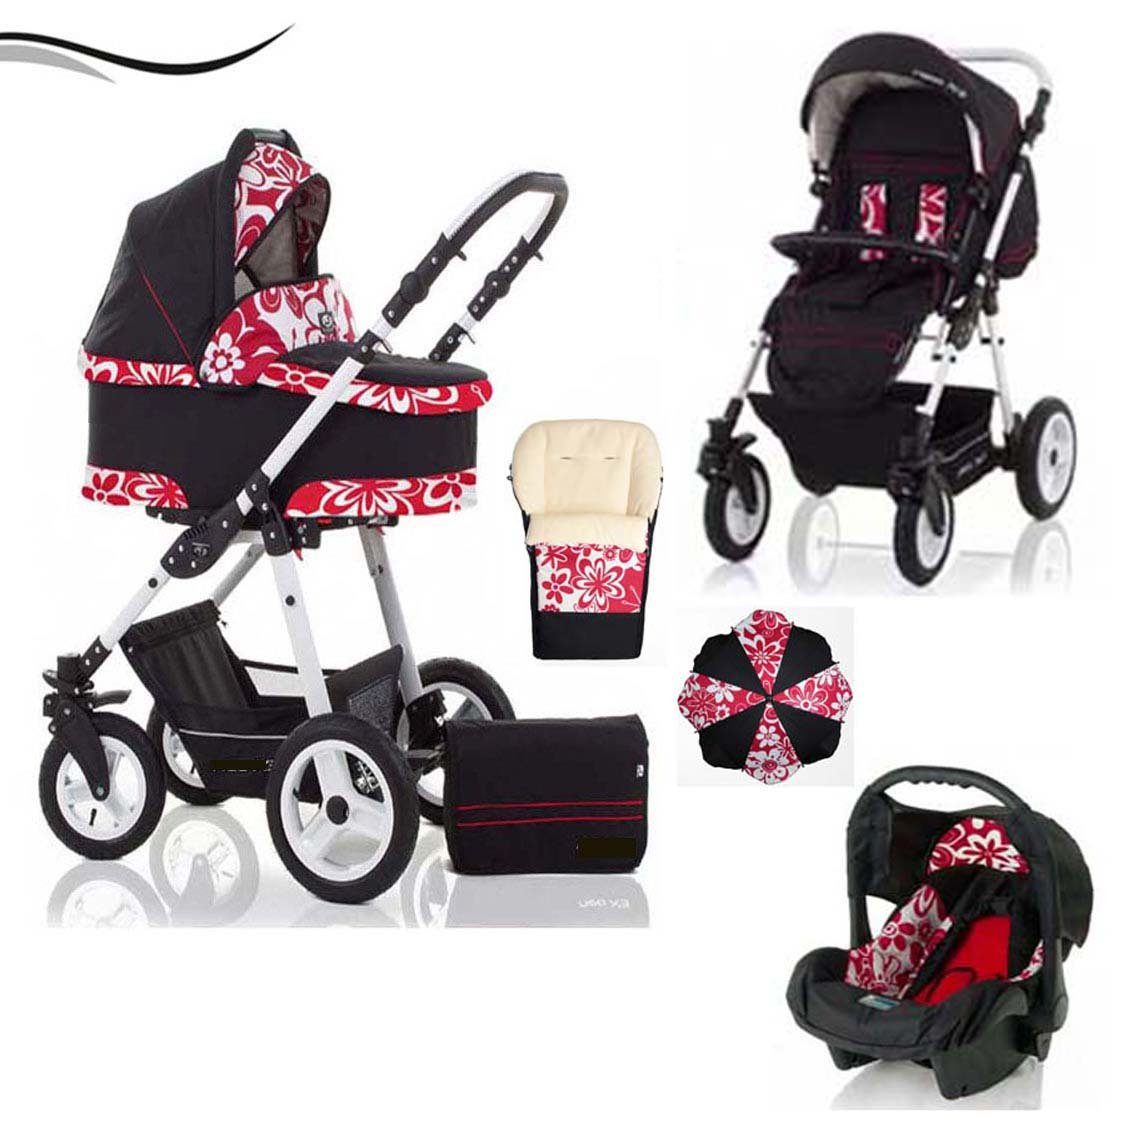 babies-on-wheels Kombi-Kinderwagen City Star 5 in 1 inkl. Autositz, Sonnenschirm und Fußsack - 18 Teile - von Geburt bis 4 Jahre in 16 Farben Rot-Blume